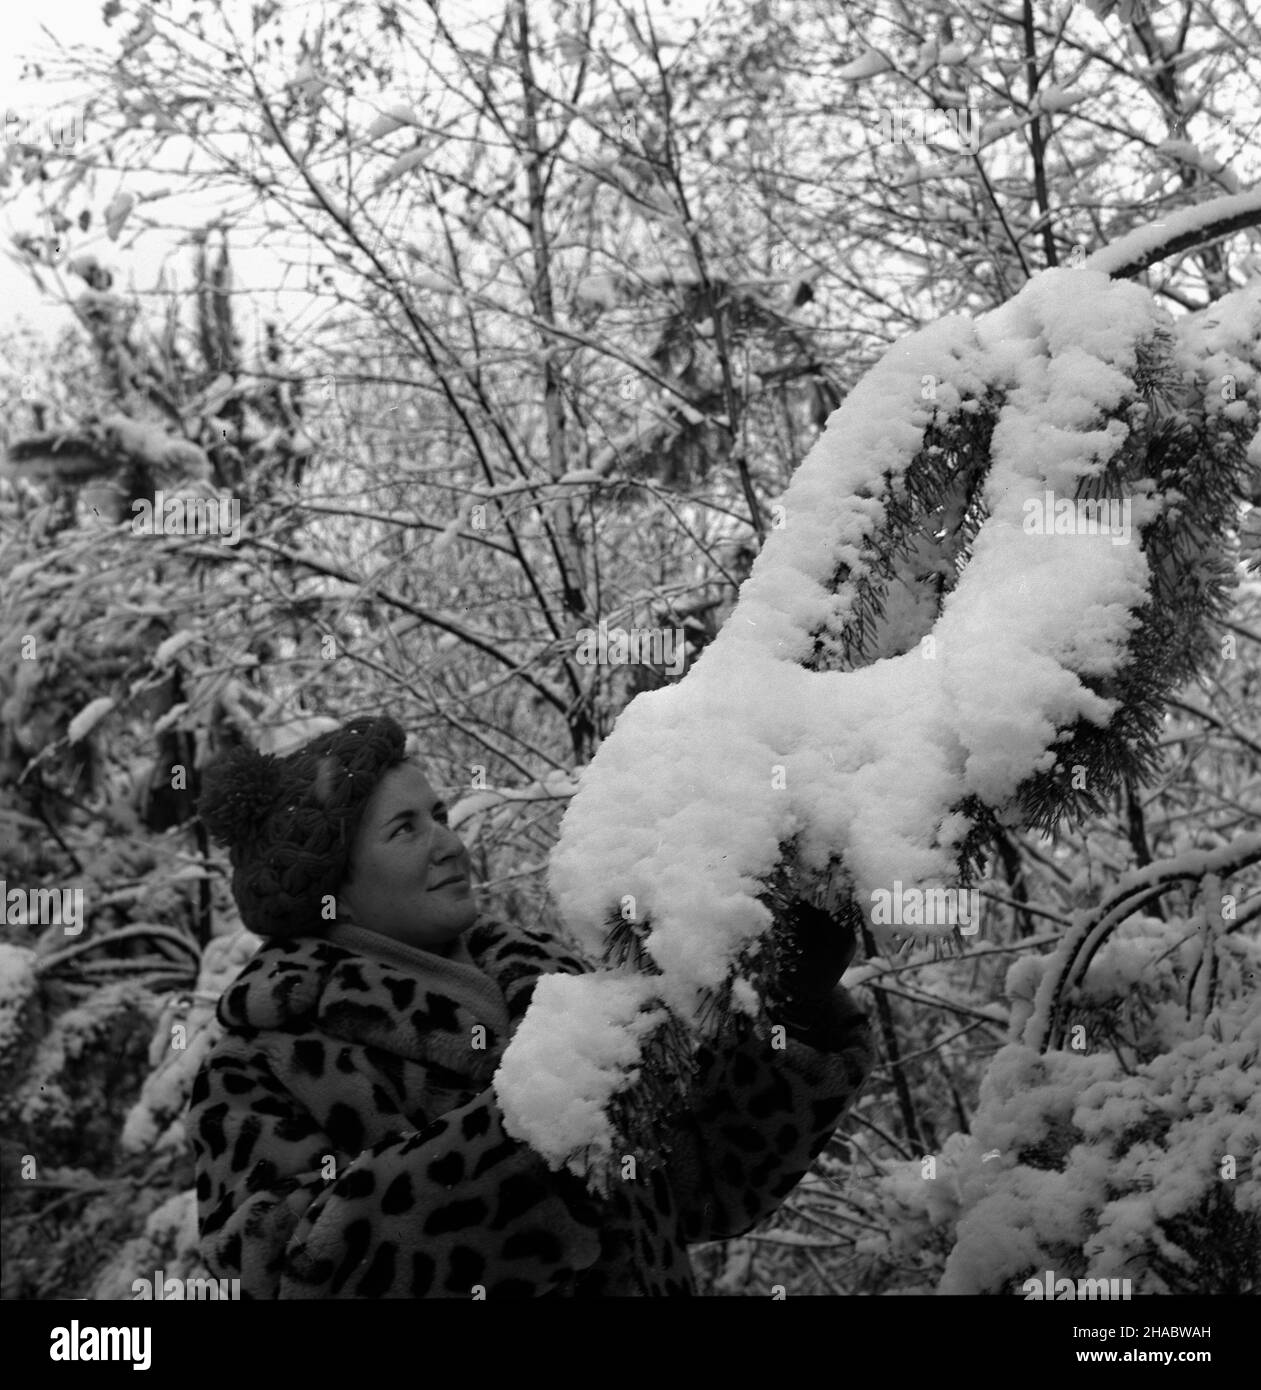 Olsztyn, 1969-11-05. Pierwszy œnieg w Olsztynie. Nz. kobieta dotyka przysypanej œniegiem ga³êzi. mb  PAP/Stanis³aw Moroz      Olsztyn, Nov. 5. 1969. First snow in Olsztyn. Pictured: a woman touches a snow-covered tree branche.  mb  PAP/Stanis³aw Moroz Stock Photo